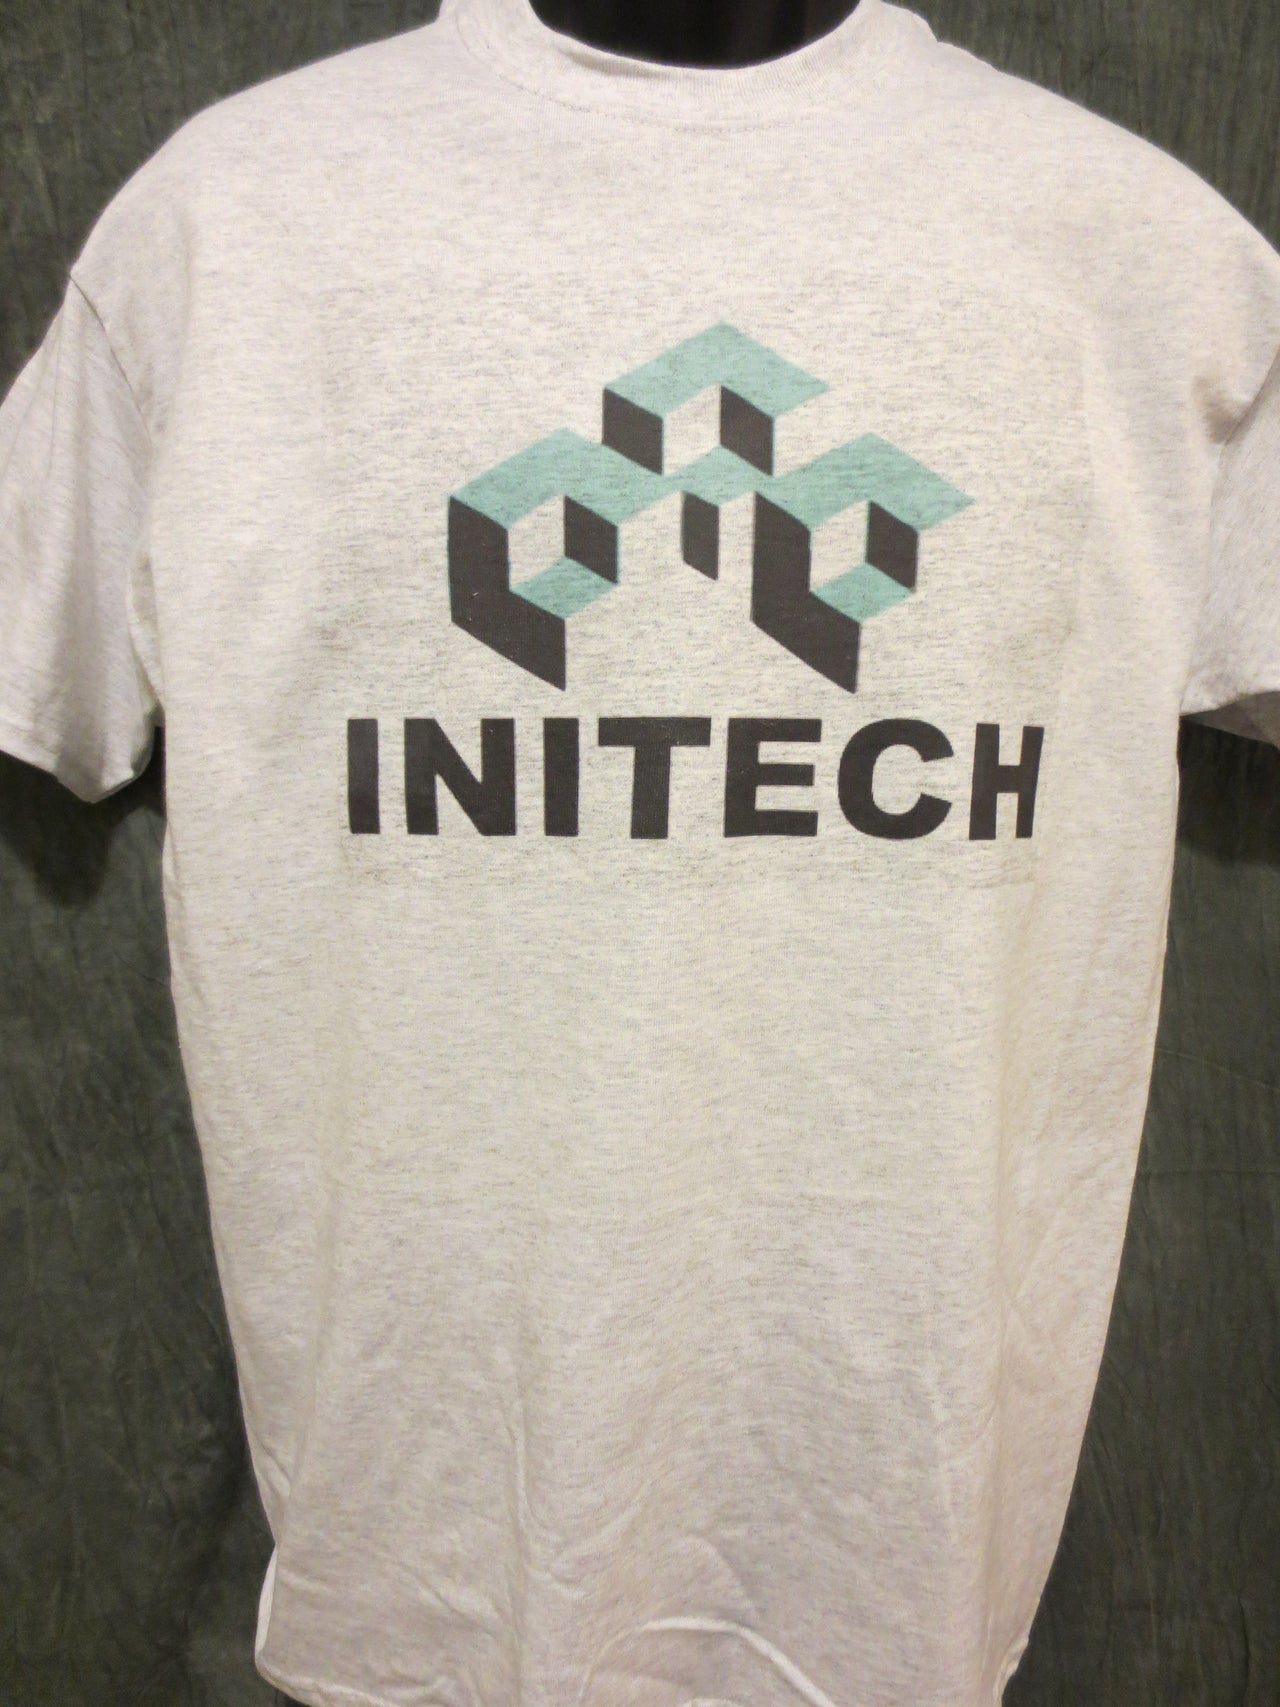 Office Space Initech Logo Tshirt - TshirtNow.net - 4